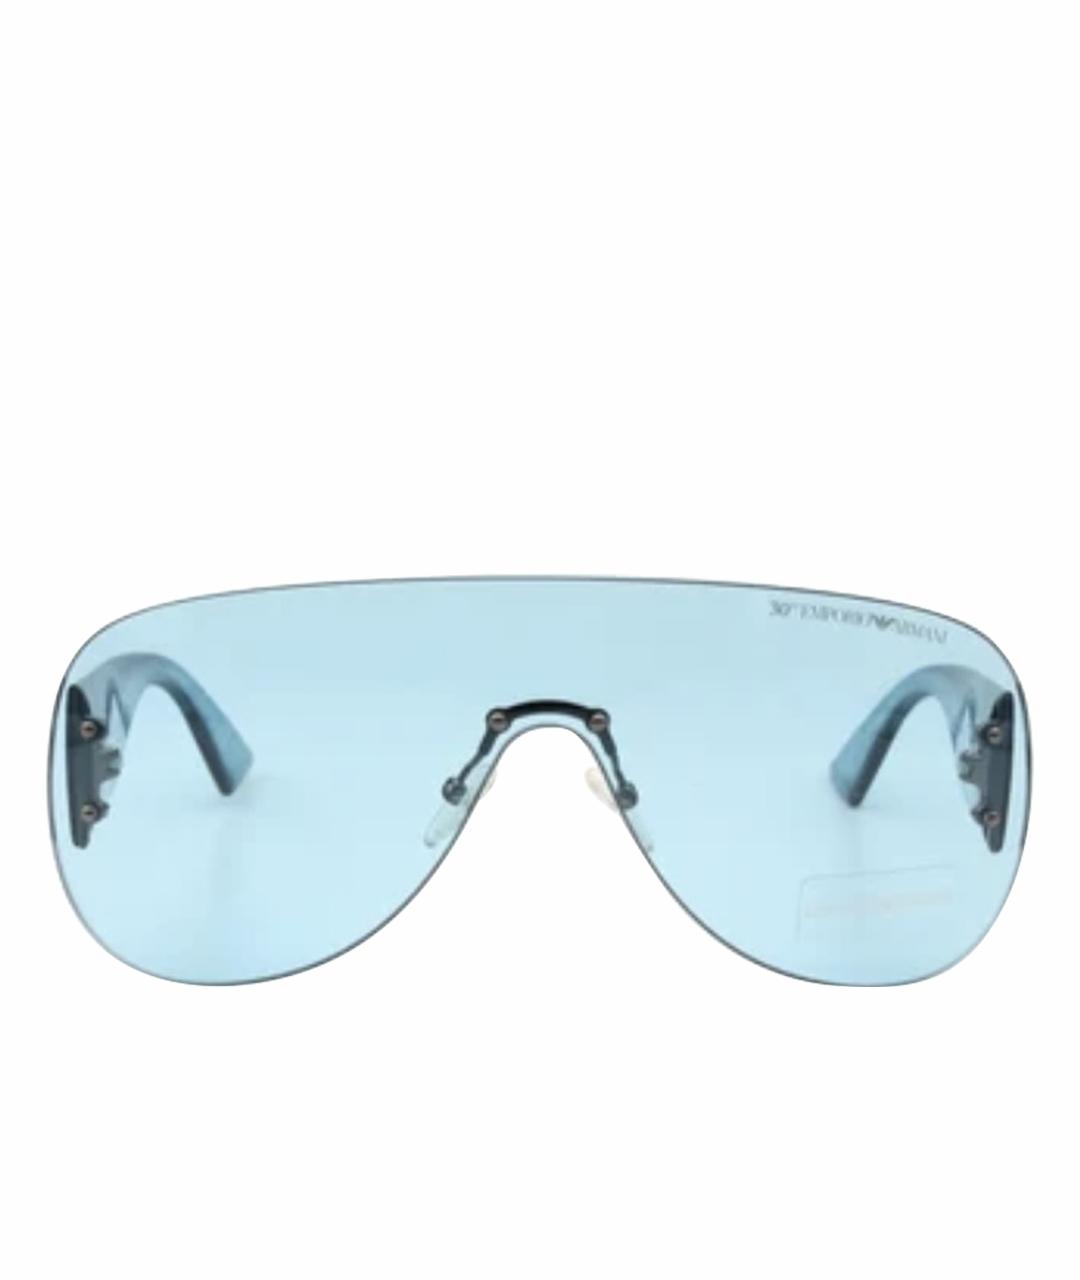 EMPORIO ARMANI Голубые солнцезащитные очки, фото 1